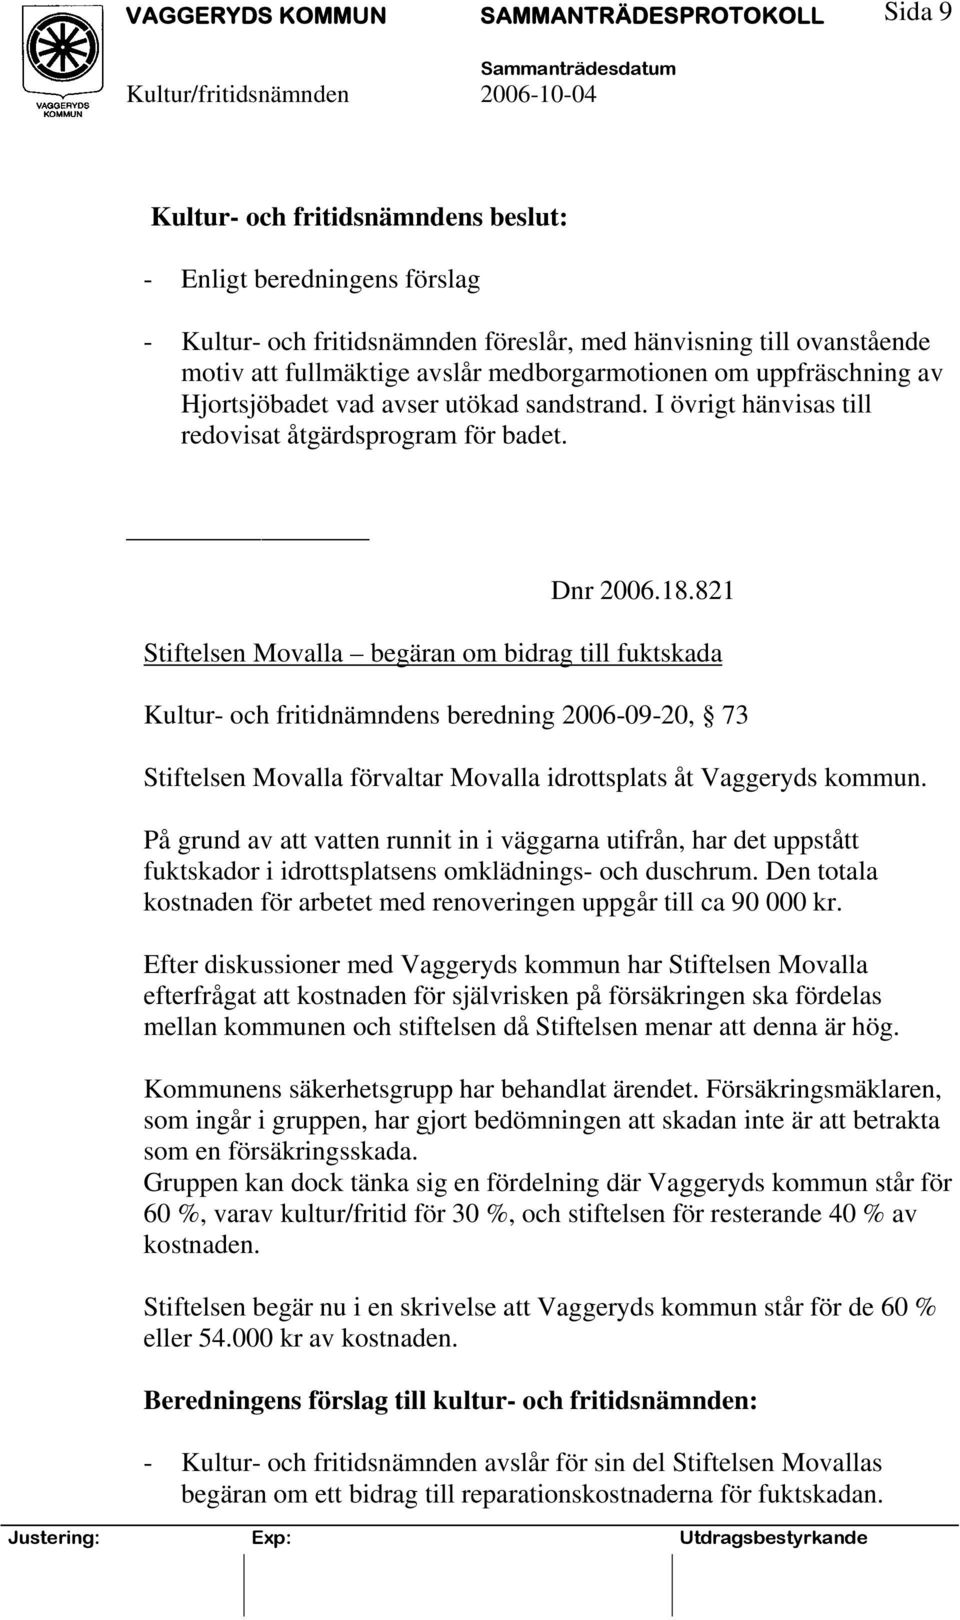 821 Stiftelsen Movalla begäran om bidrag till fuktskada Kultur- och fritidnämndens beredning 2006-09-20, 73 Stiftelsen Movalla förvaltar Movalla idrottsplats åt Vaggeryds kommun.